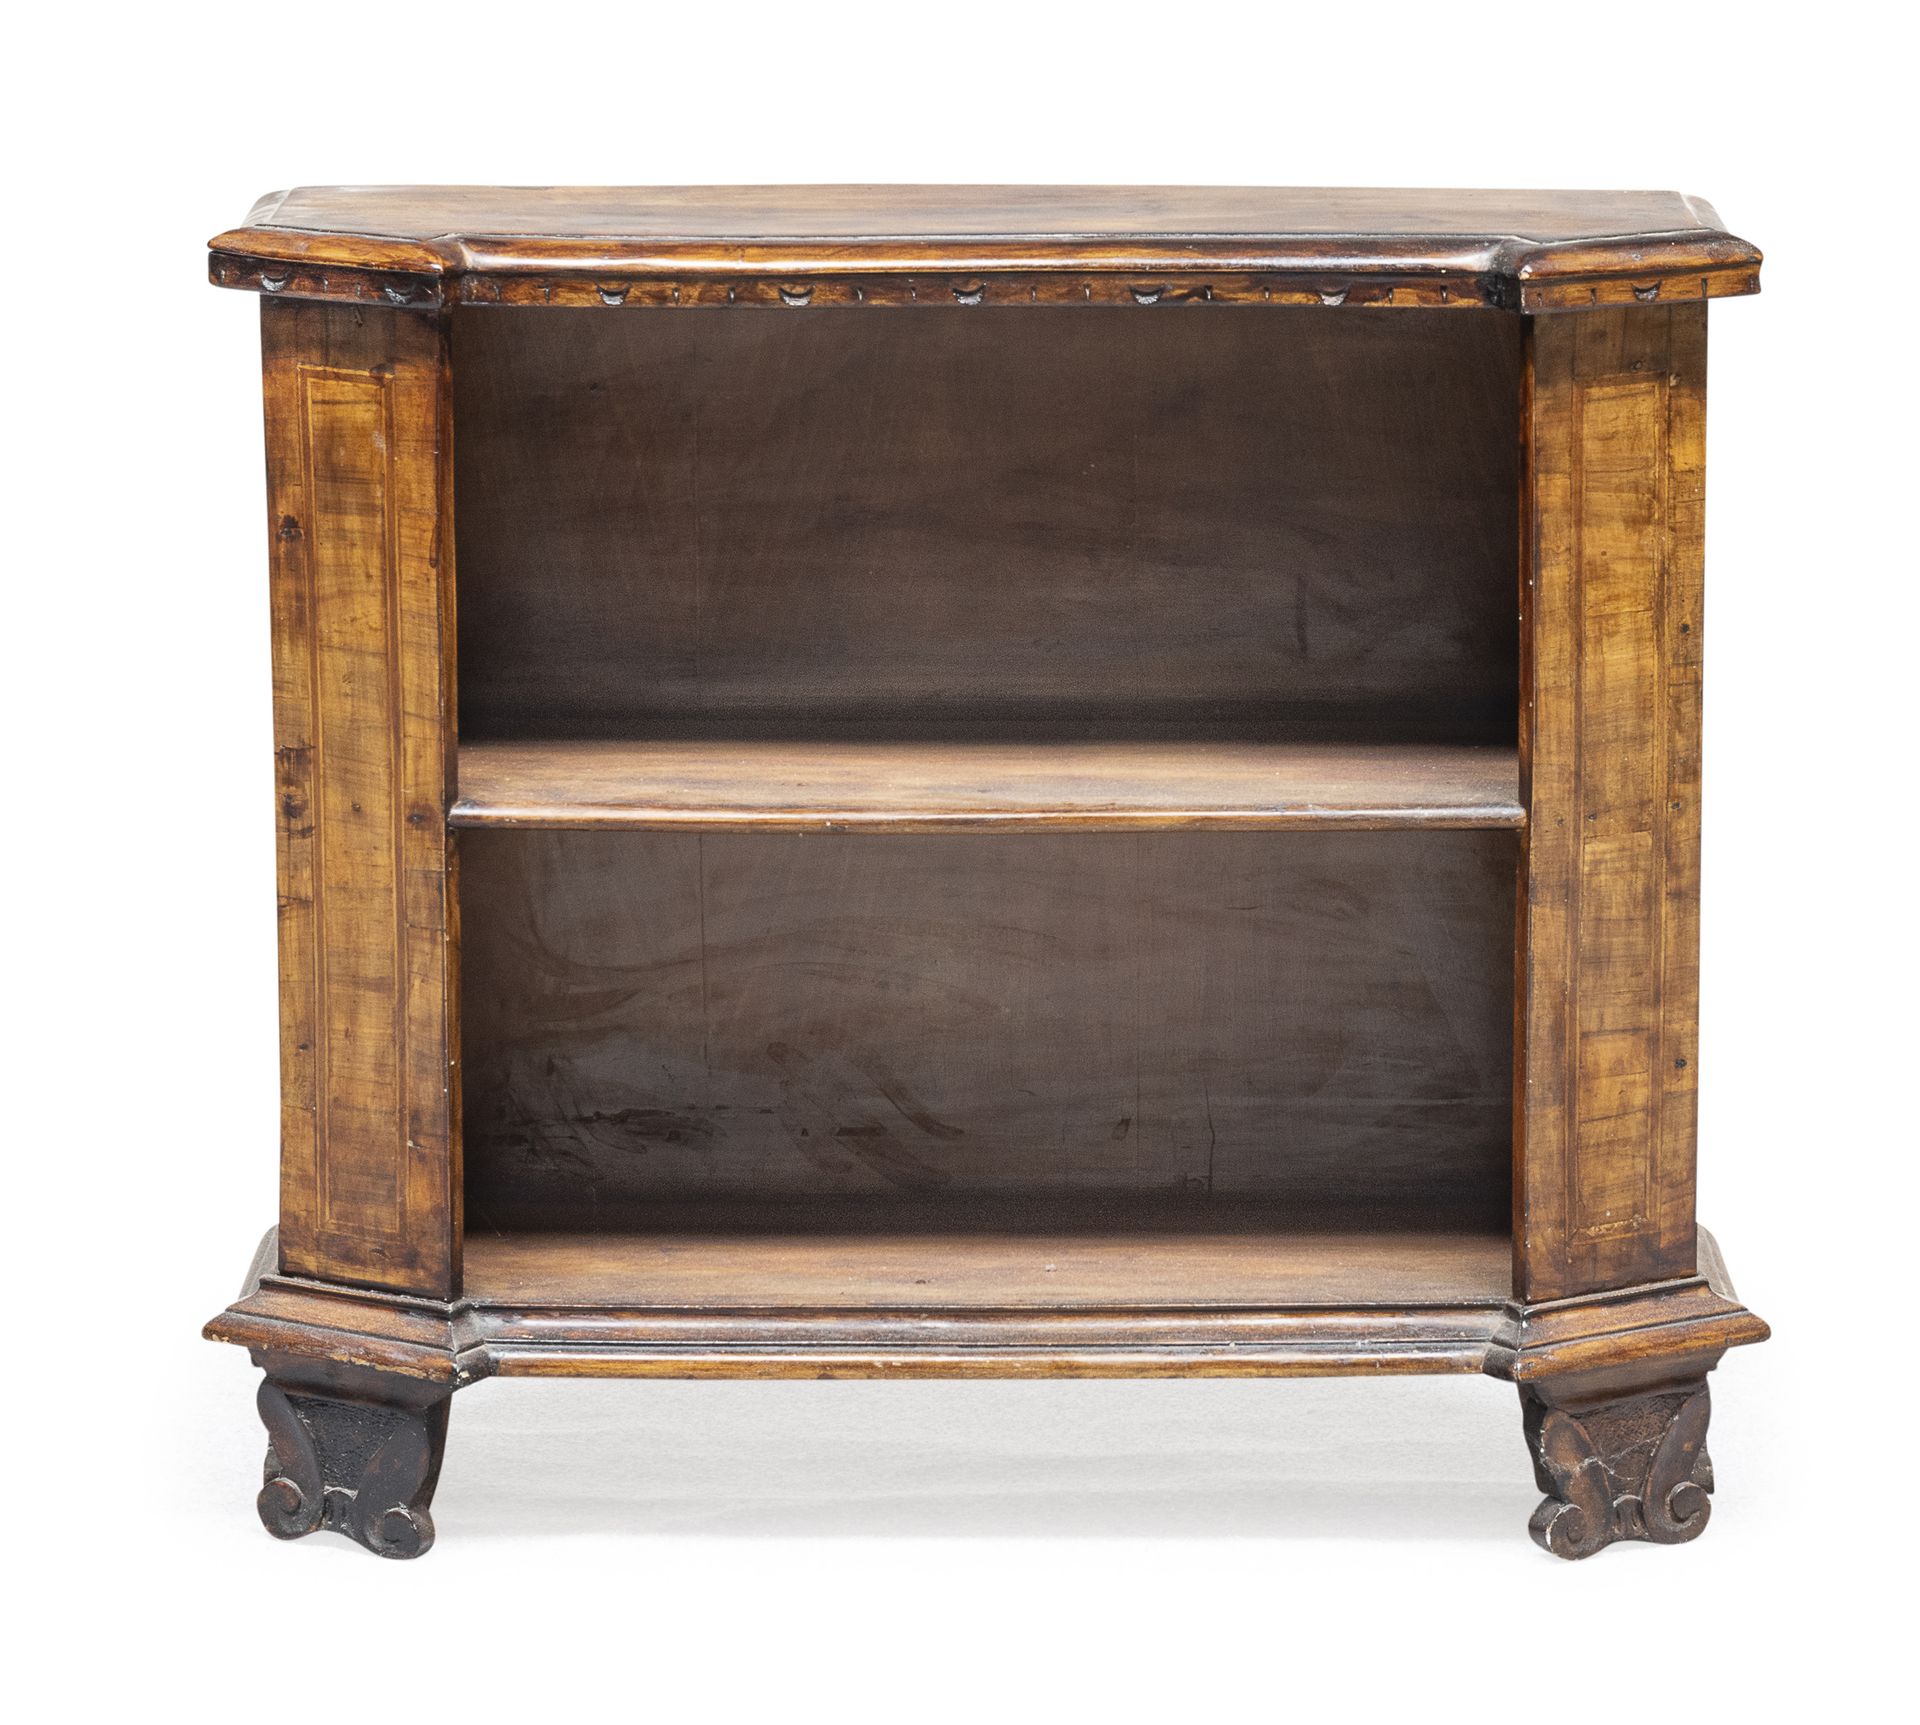 Null 米尼翁开放式书柜，20世纪初


用胡桃木染成的十七世纪风格的木材。


尺寸为64 x 72 x 21厘米。